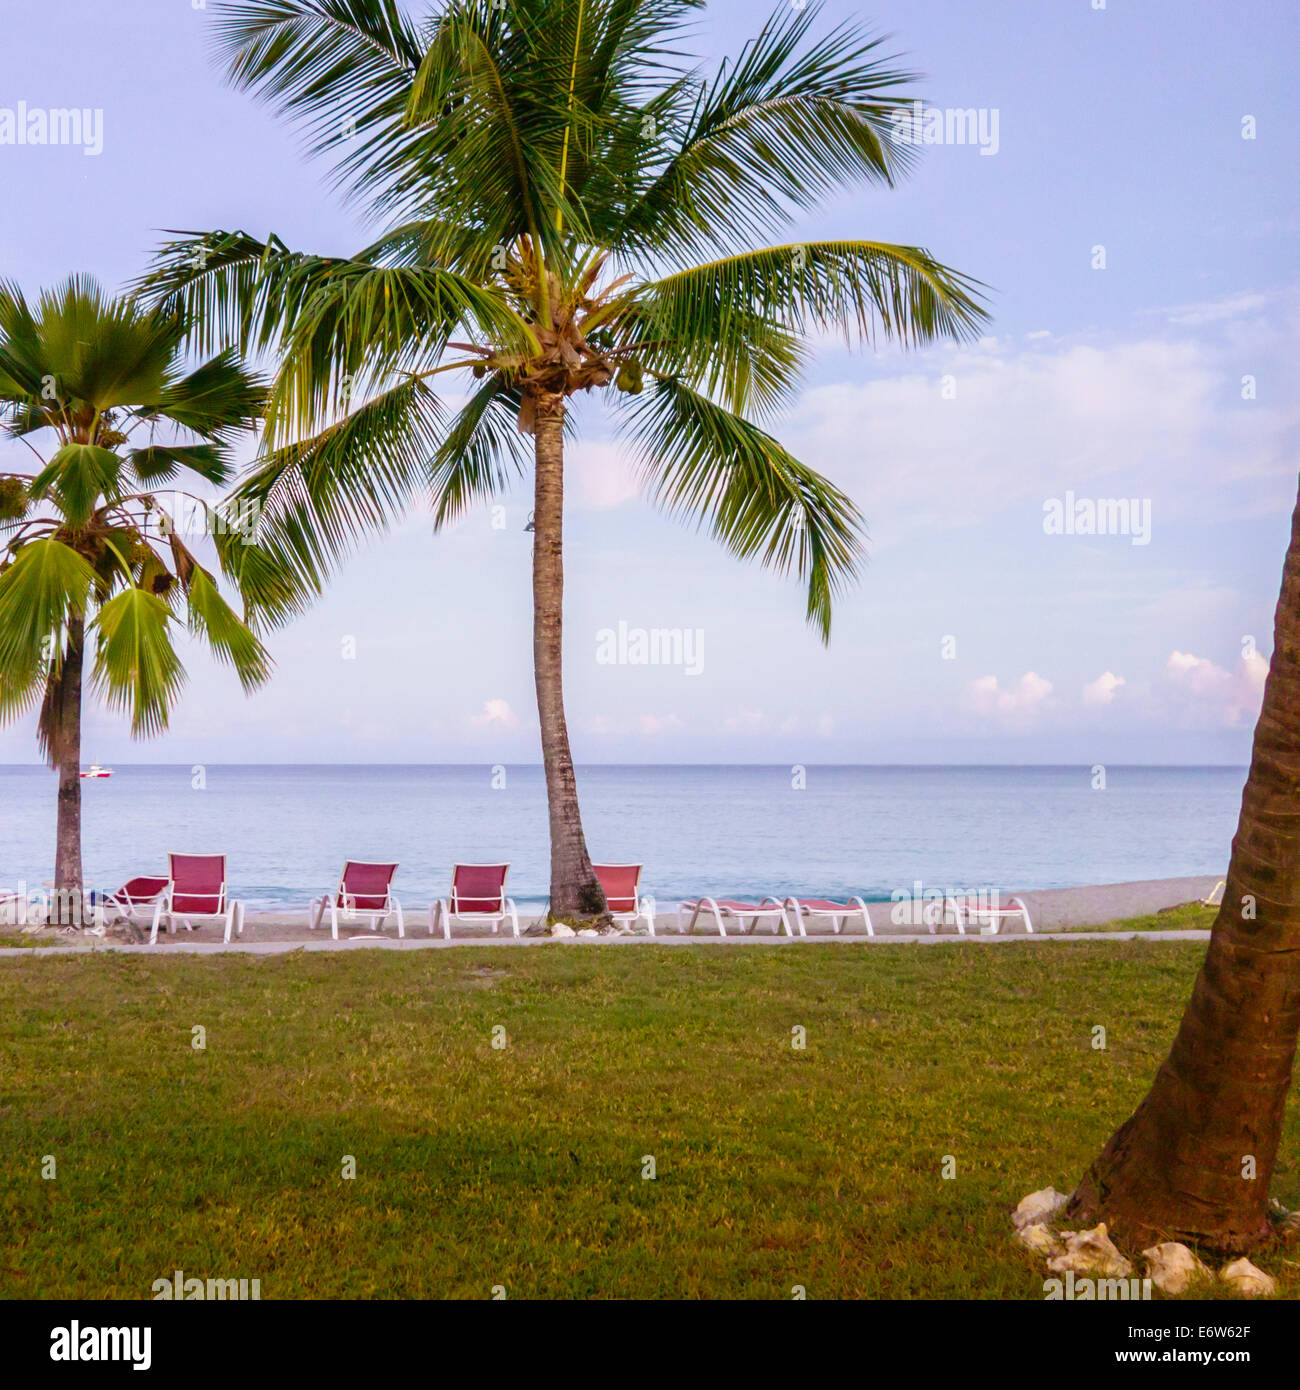 Palme da cocco sulla spiaggia caraibica a St. Croix, U. S. Isole Vergini che mostra il prato e acque calme. Isole Vergini Americane, USVI, U.S.V.I. Foto Stock